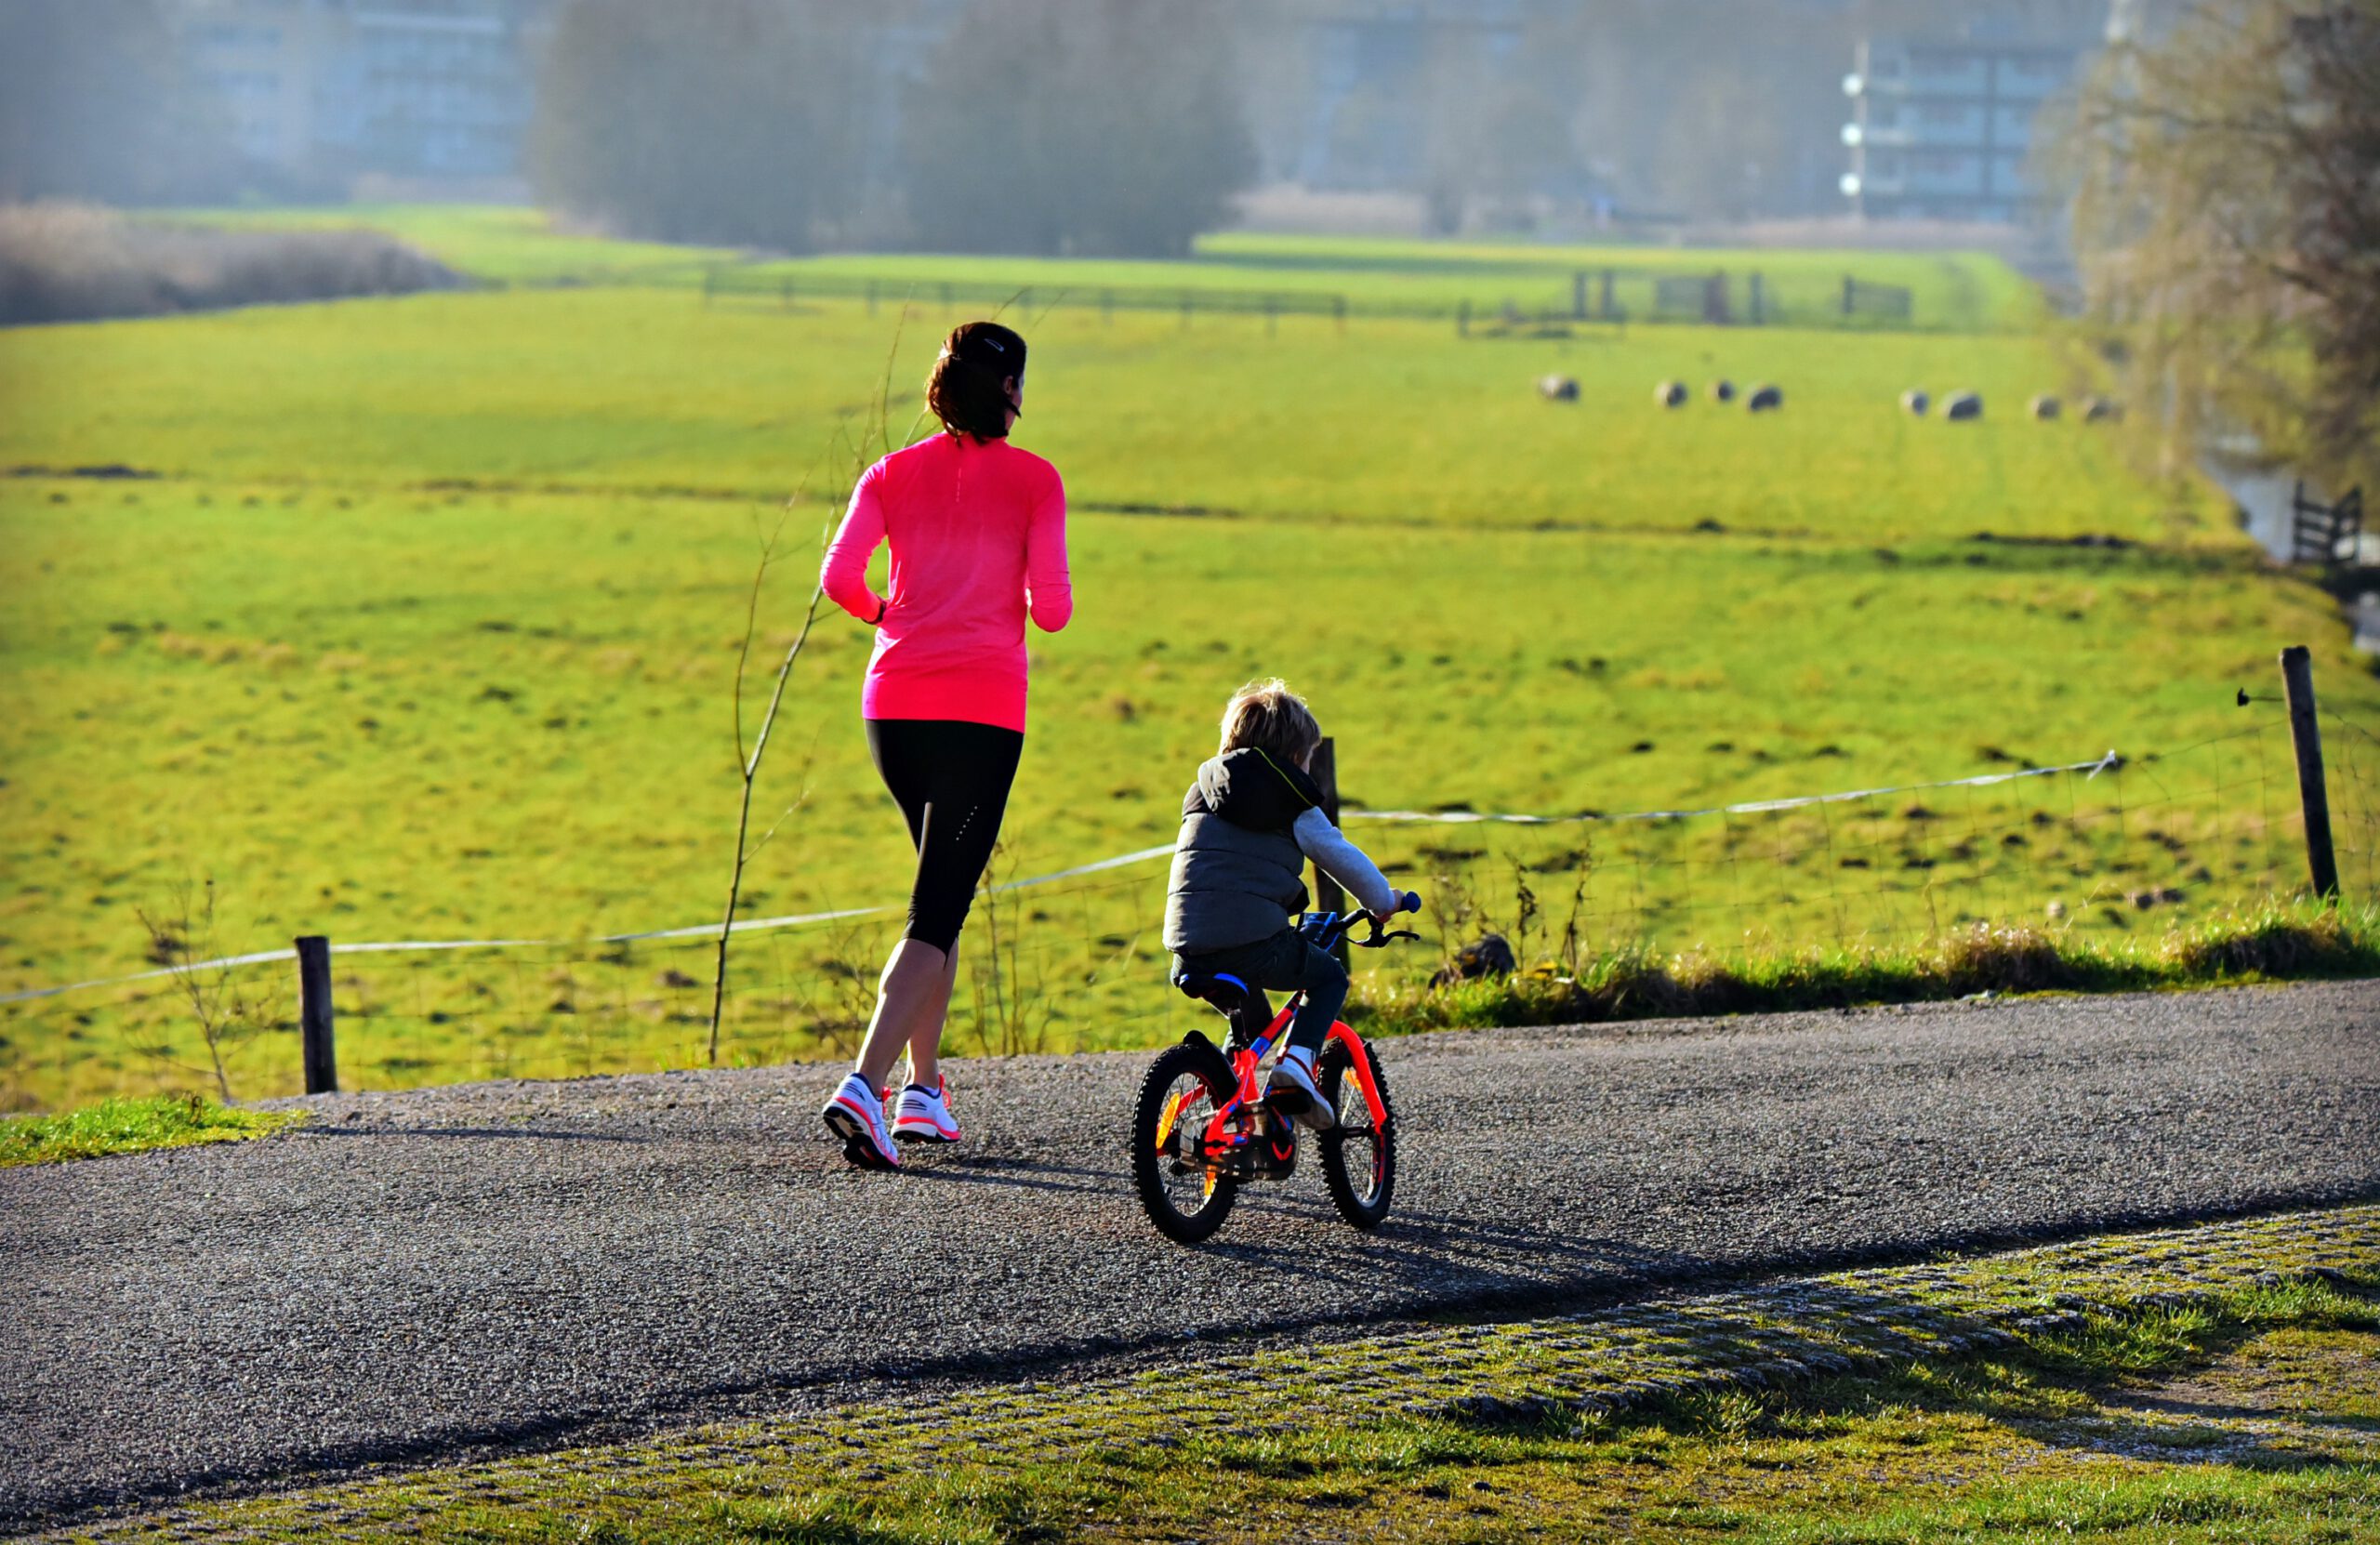 Madre haciendo footing mientras su hijo va en bicicleta